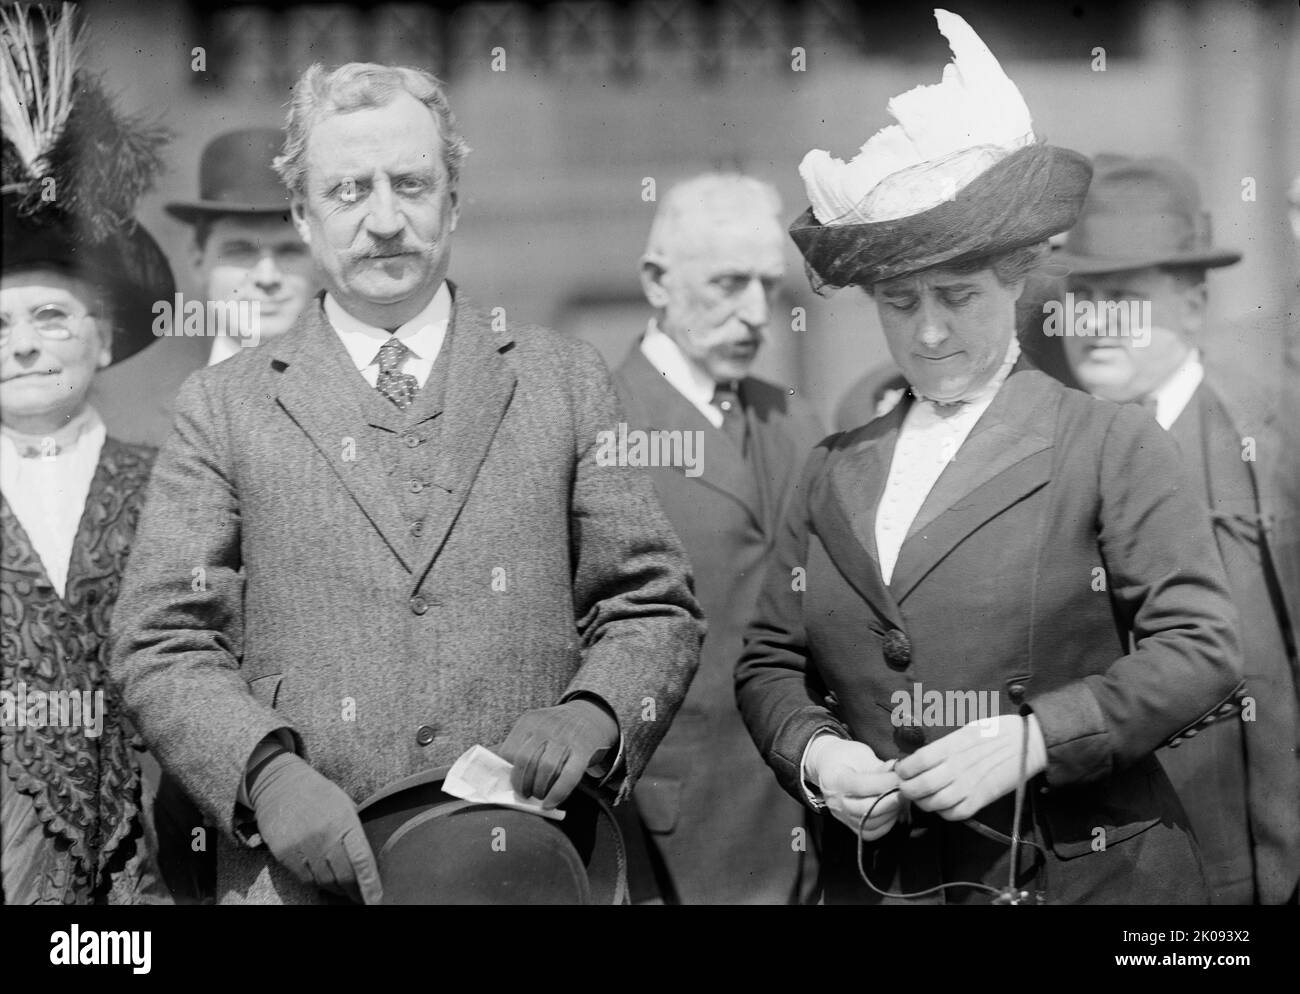 William D. [sic] Redmond, député d'Irlande, avec Mme Redmond, 1912. [Homme politique nationaliste irlandais, avocat et soldat William Hoey Kearney Redmond lors d'une visite aux États-Unis. Redmond a épousé Eleanor Mary Dalton en 1886. Il a été tué au cours de la première Guerre mondiale]. Banque D'Images